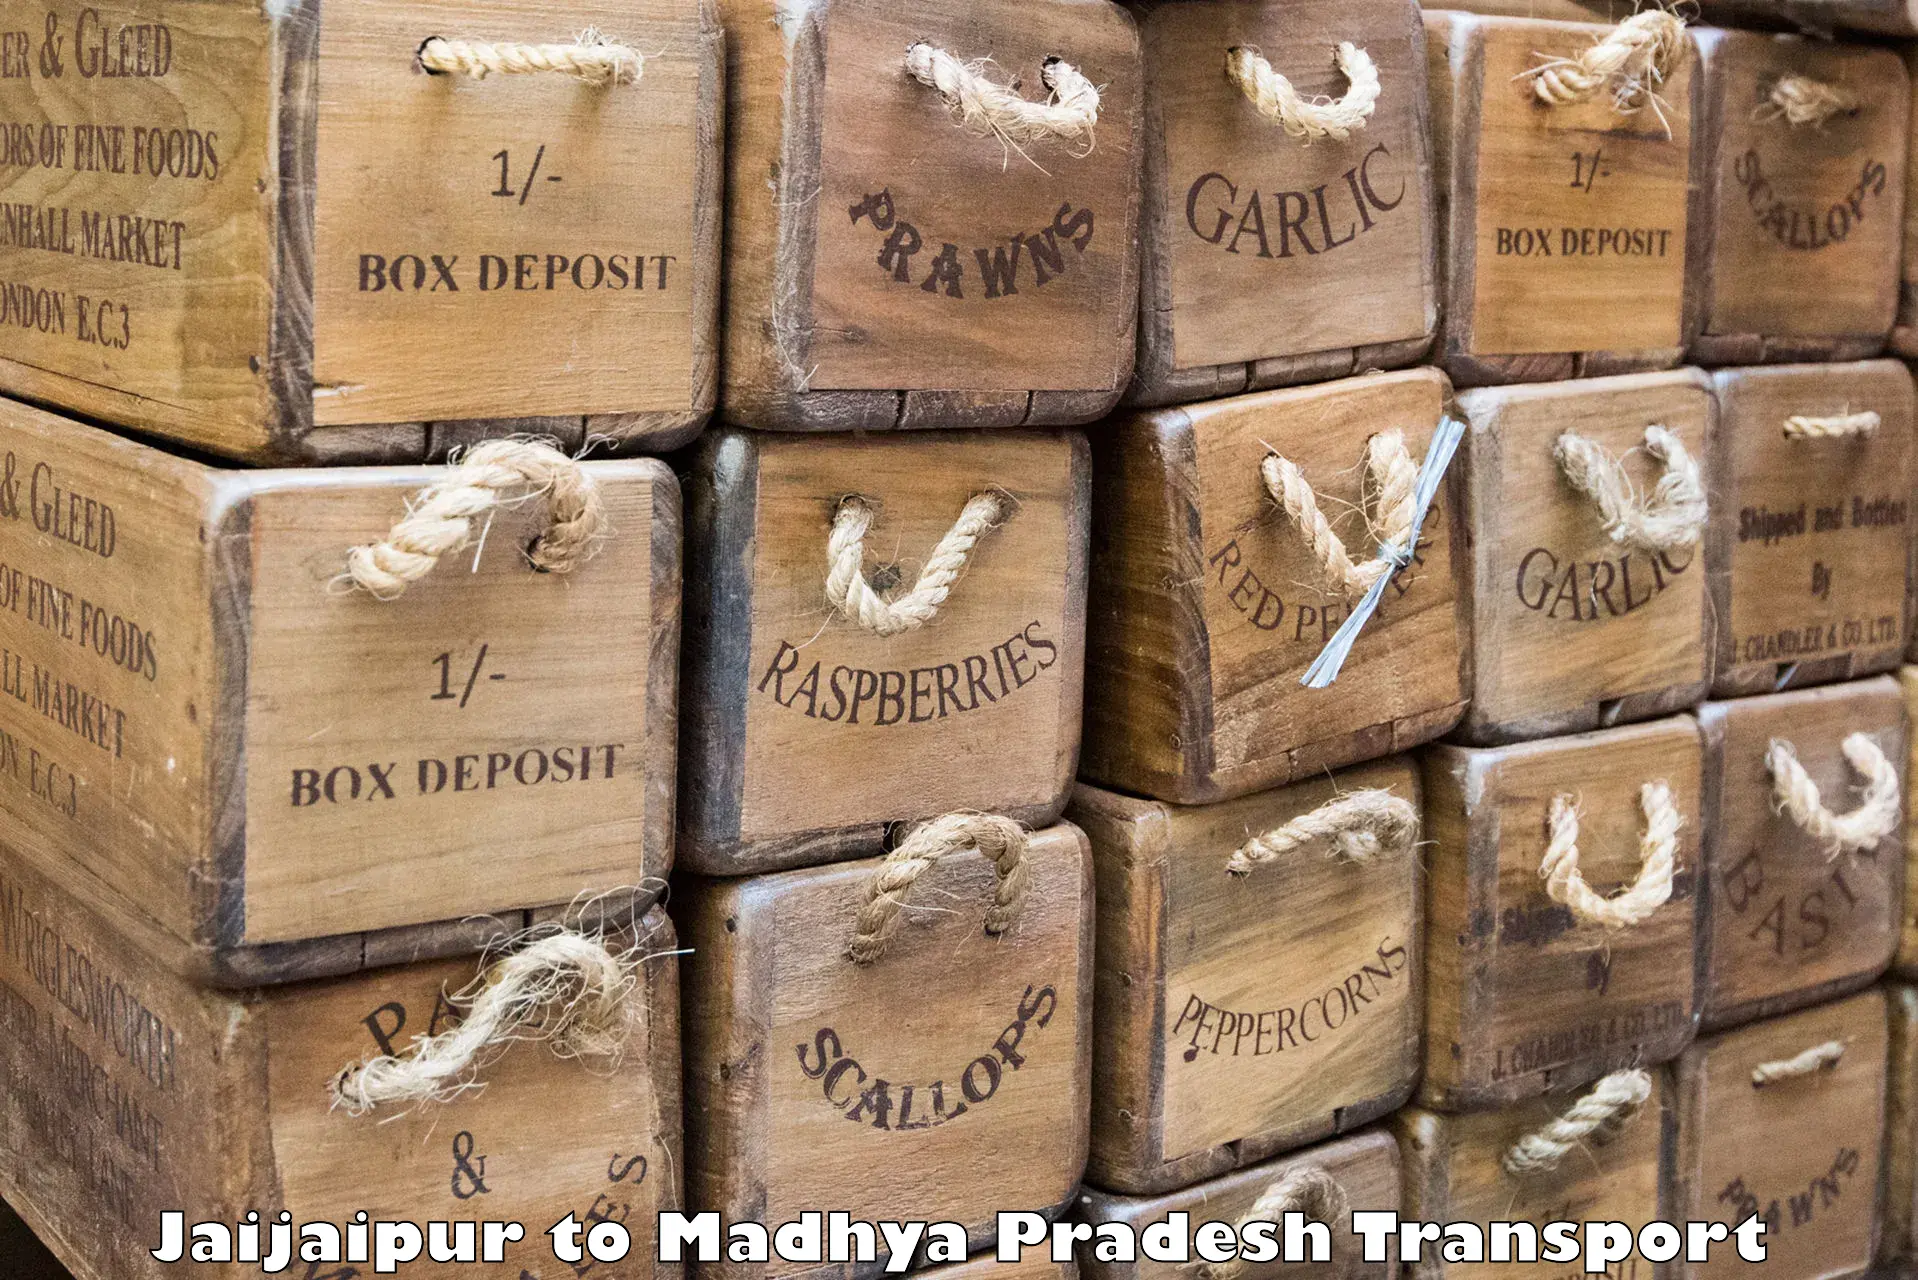 Cargo train transport services Jaijaipur to Shivpuri